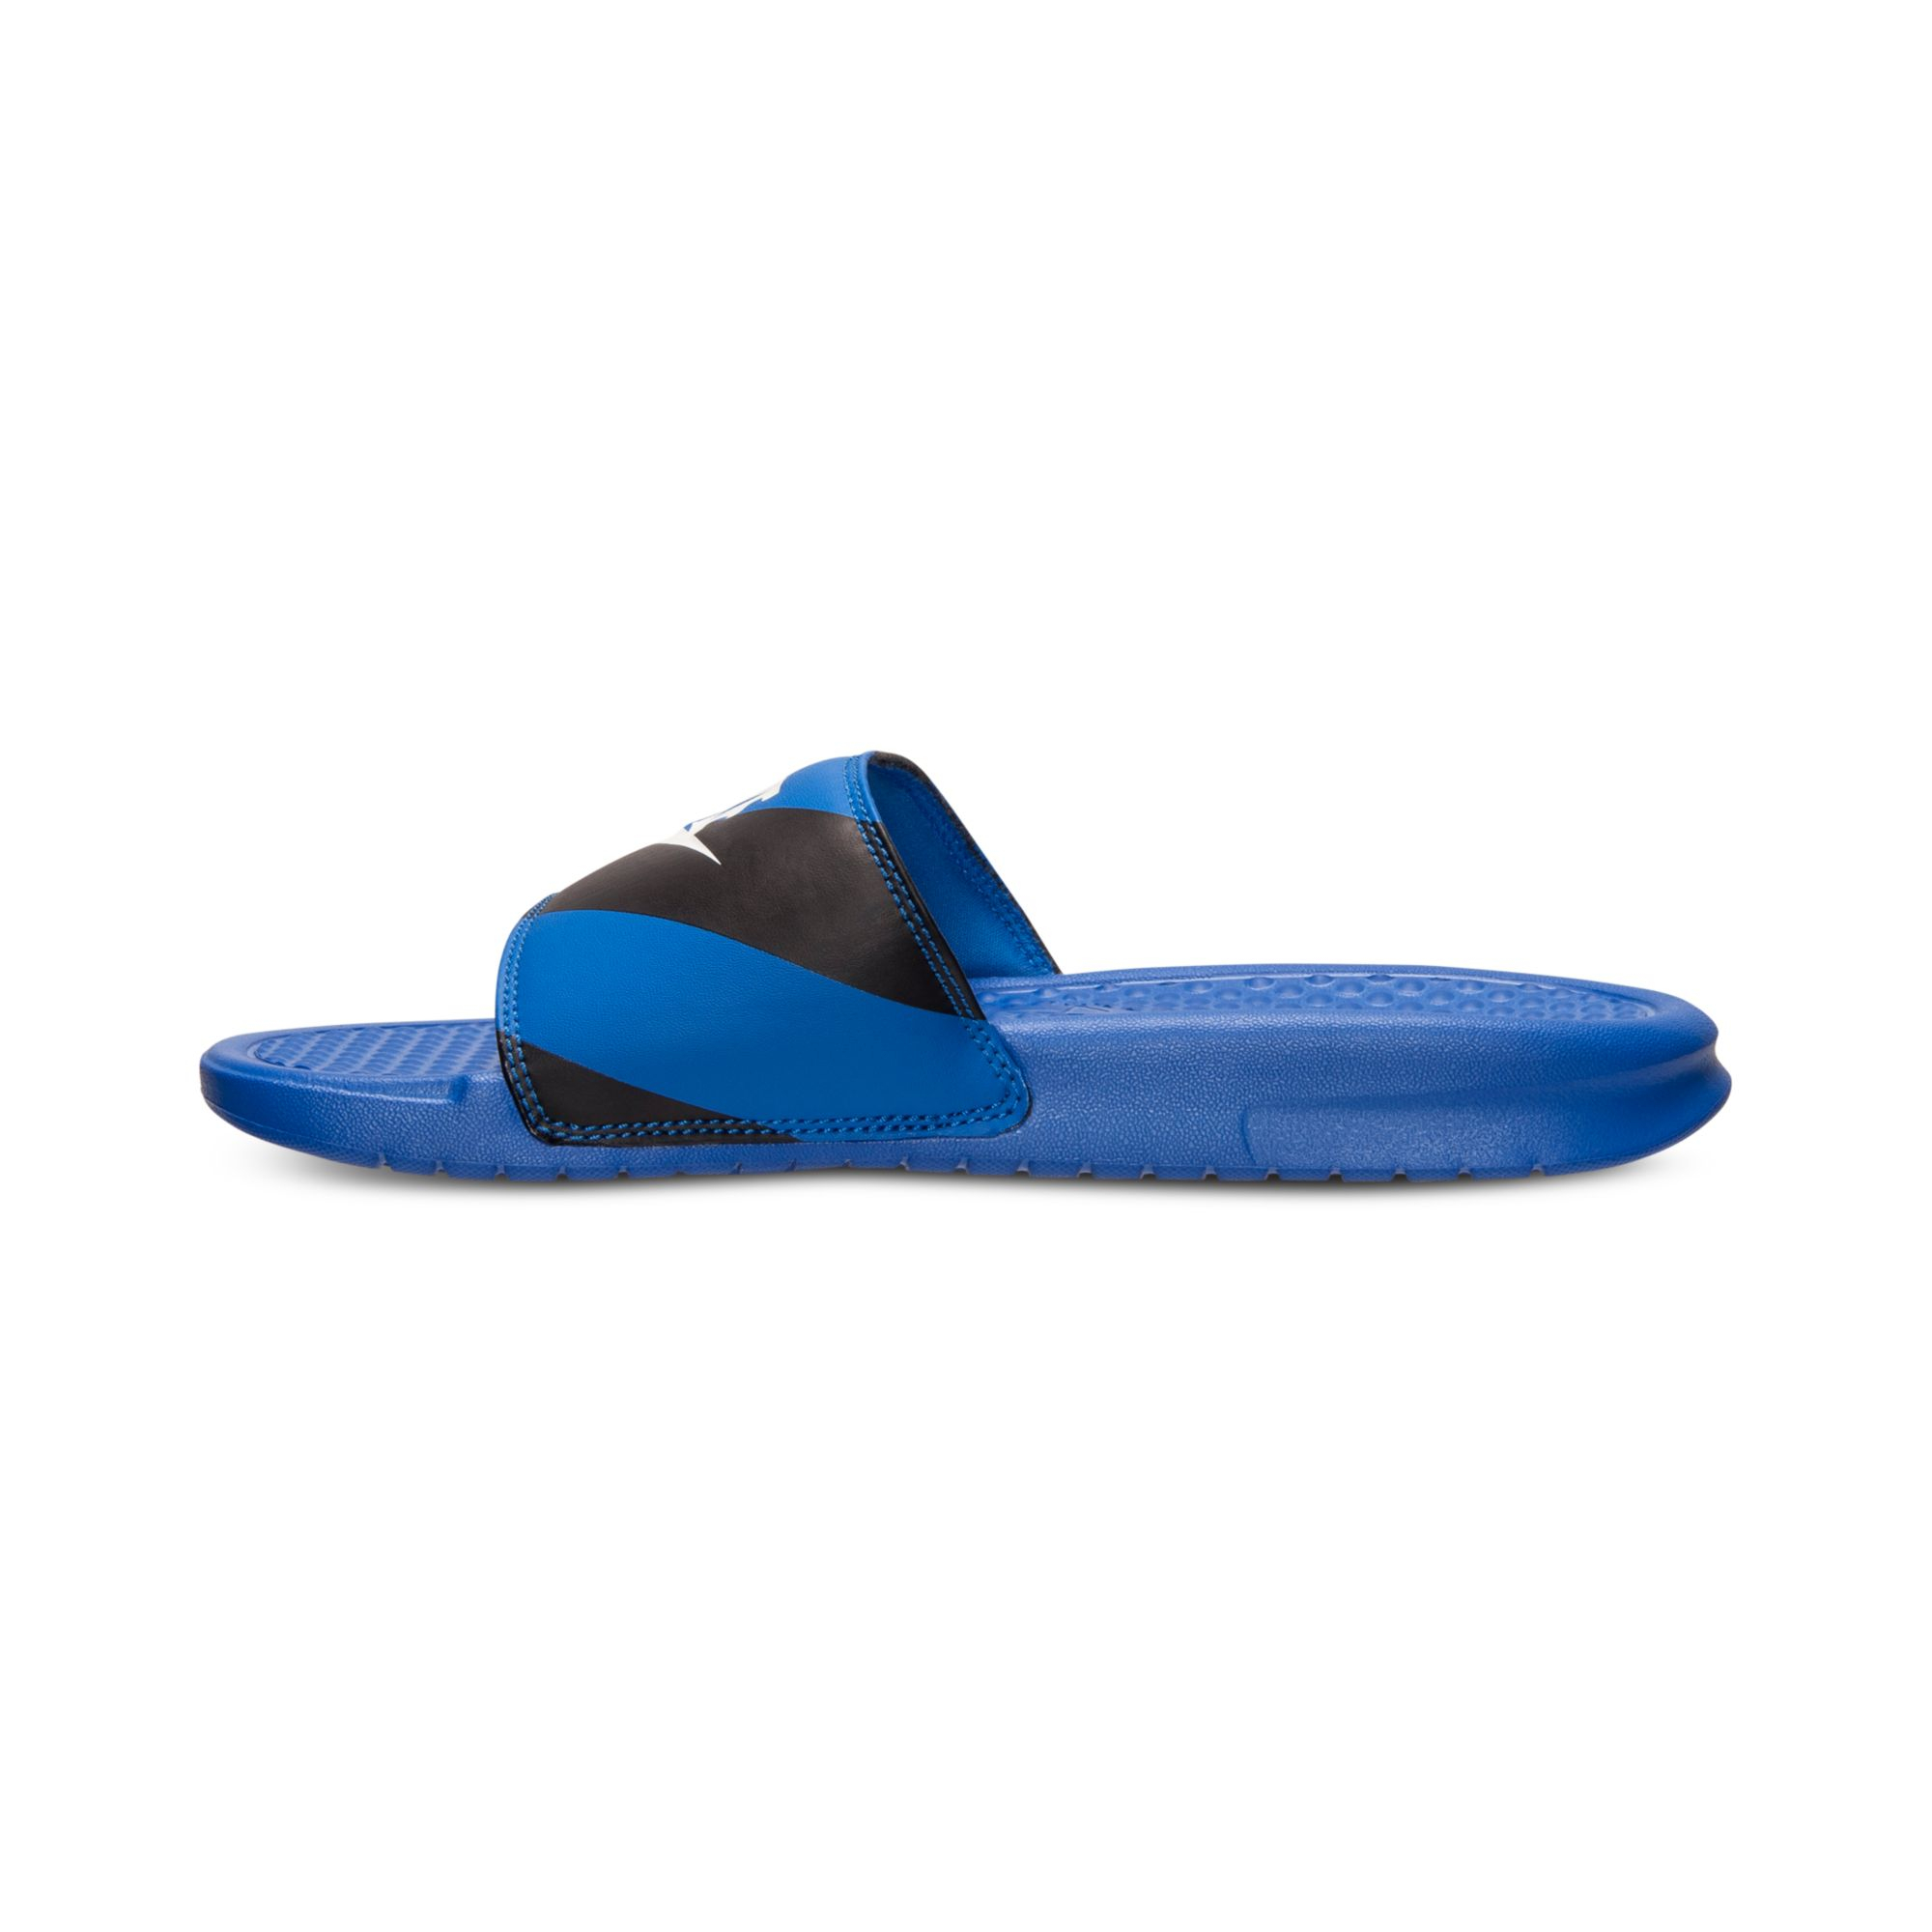 Nike Men'S Benassi Jdi Print Slide Sandals From Finish Line in Blue for ...